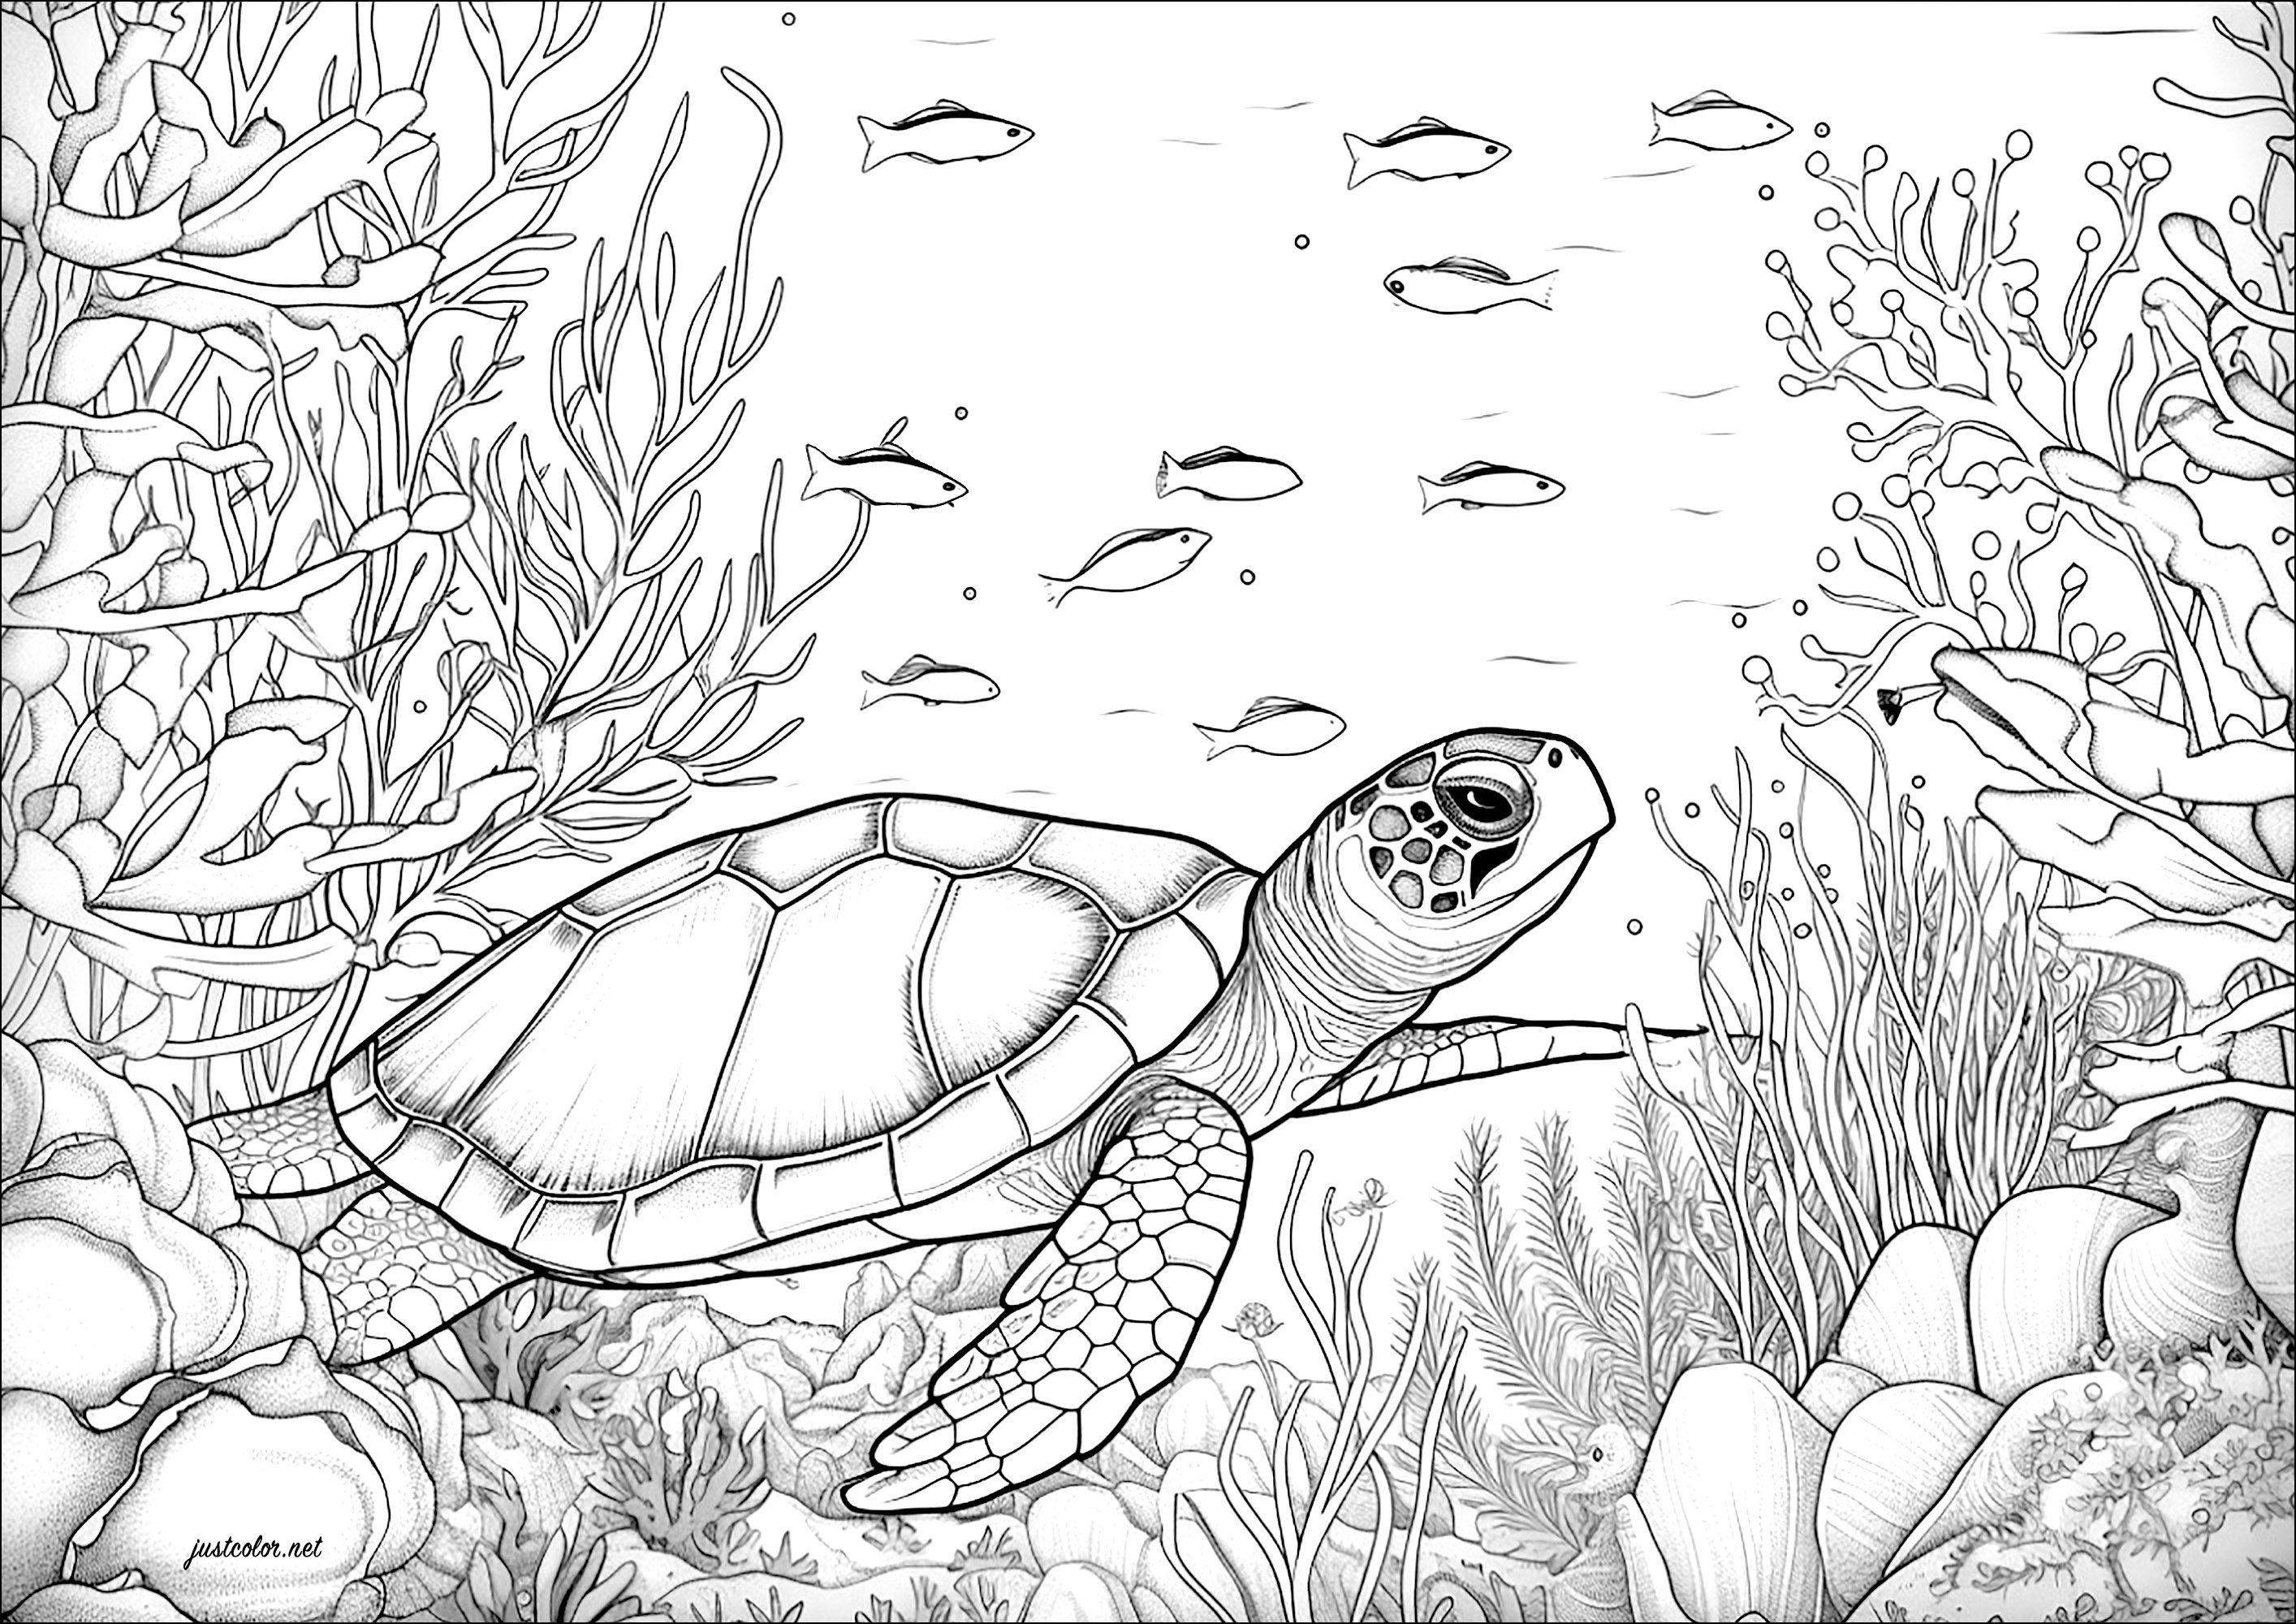 Tartaruga a nadar com peixes. Muitos pormenores para colorir em corais e algas marinhas